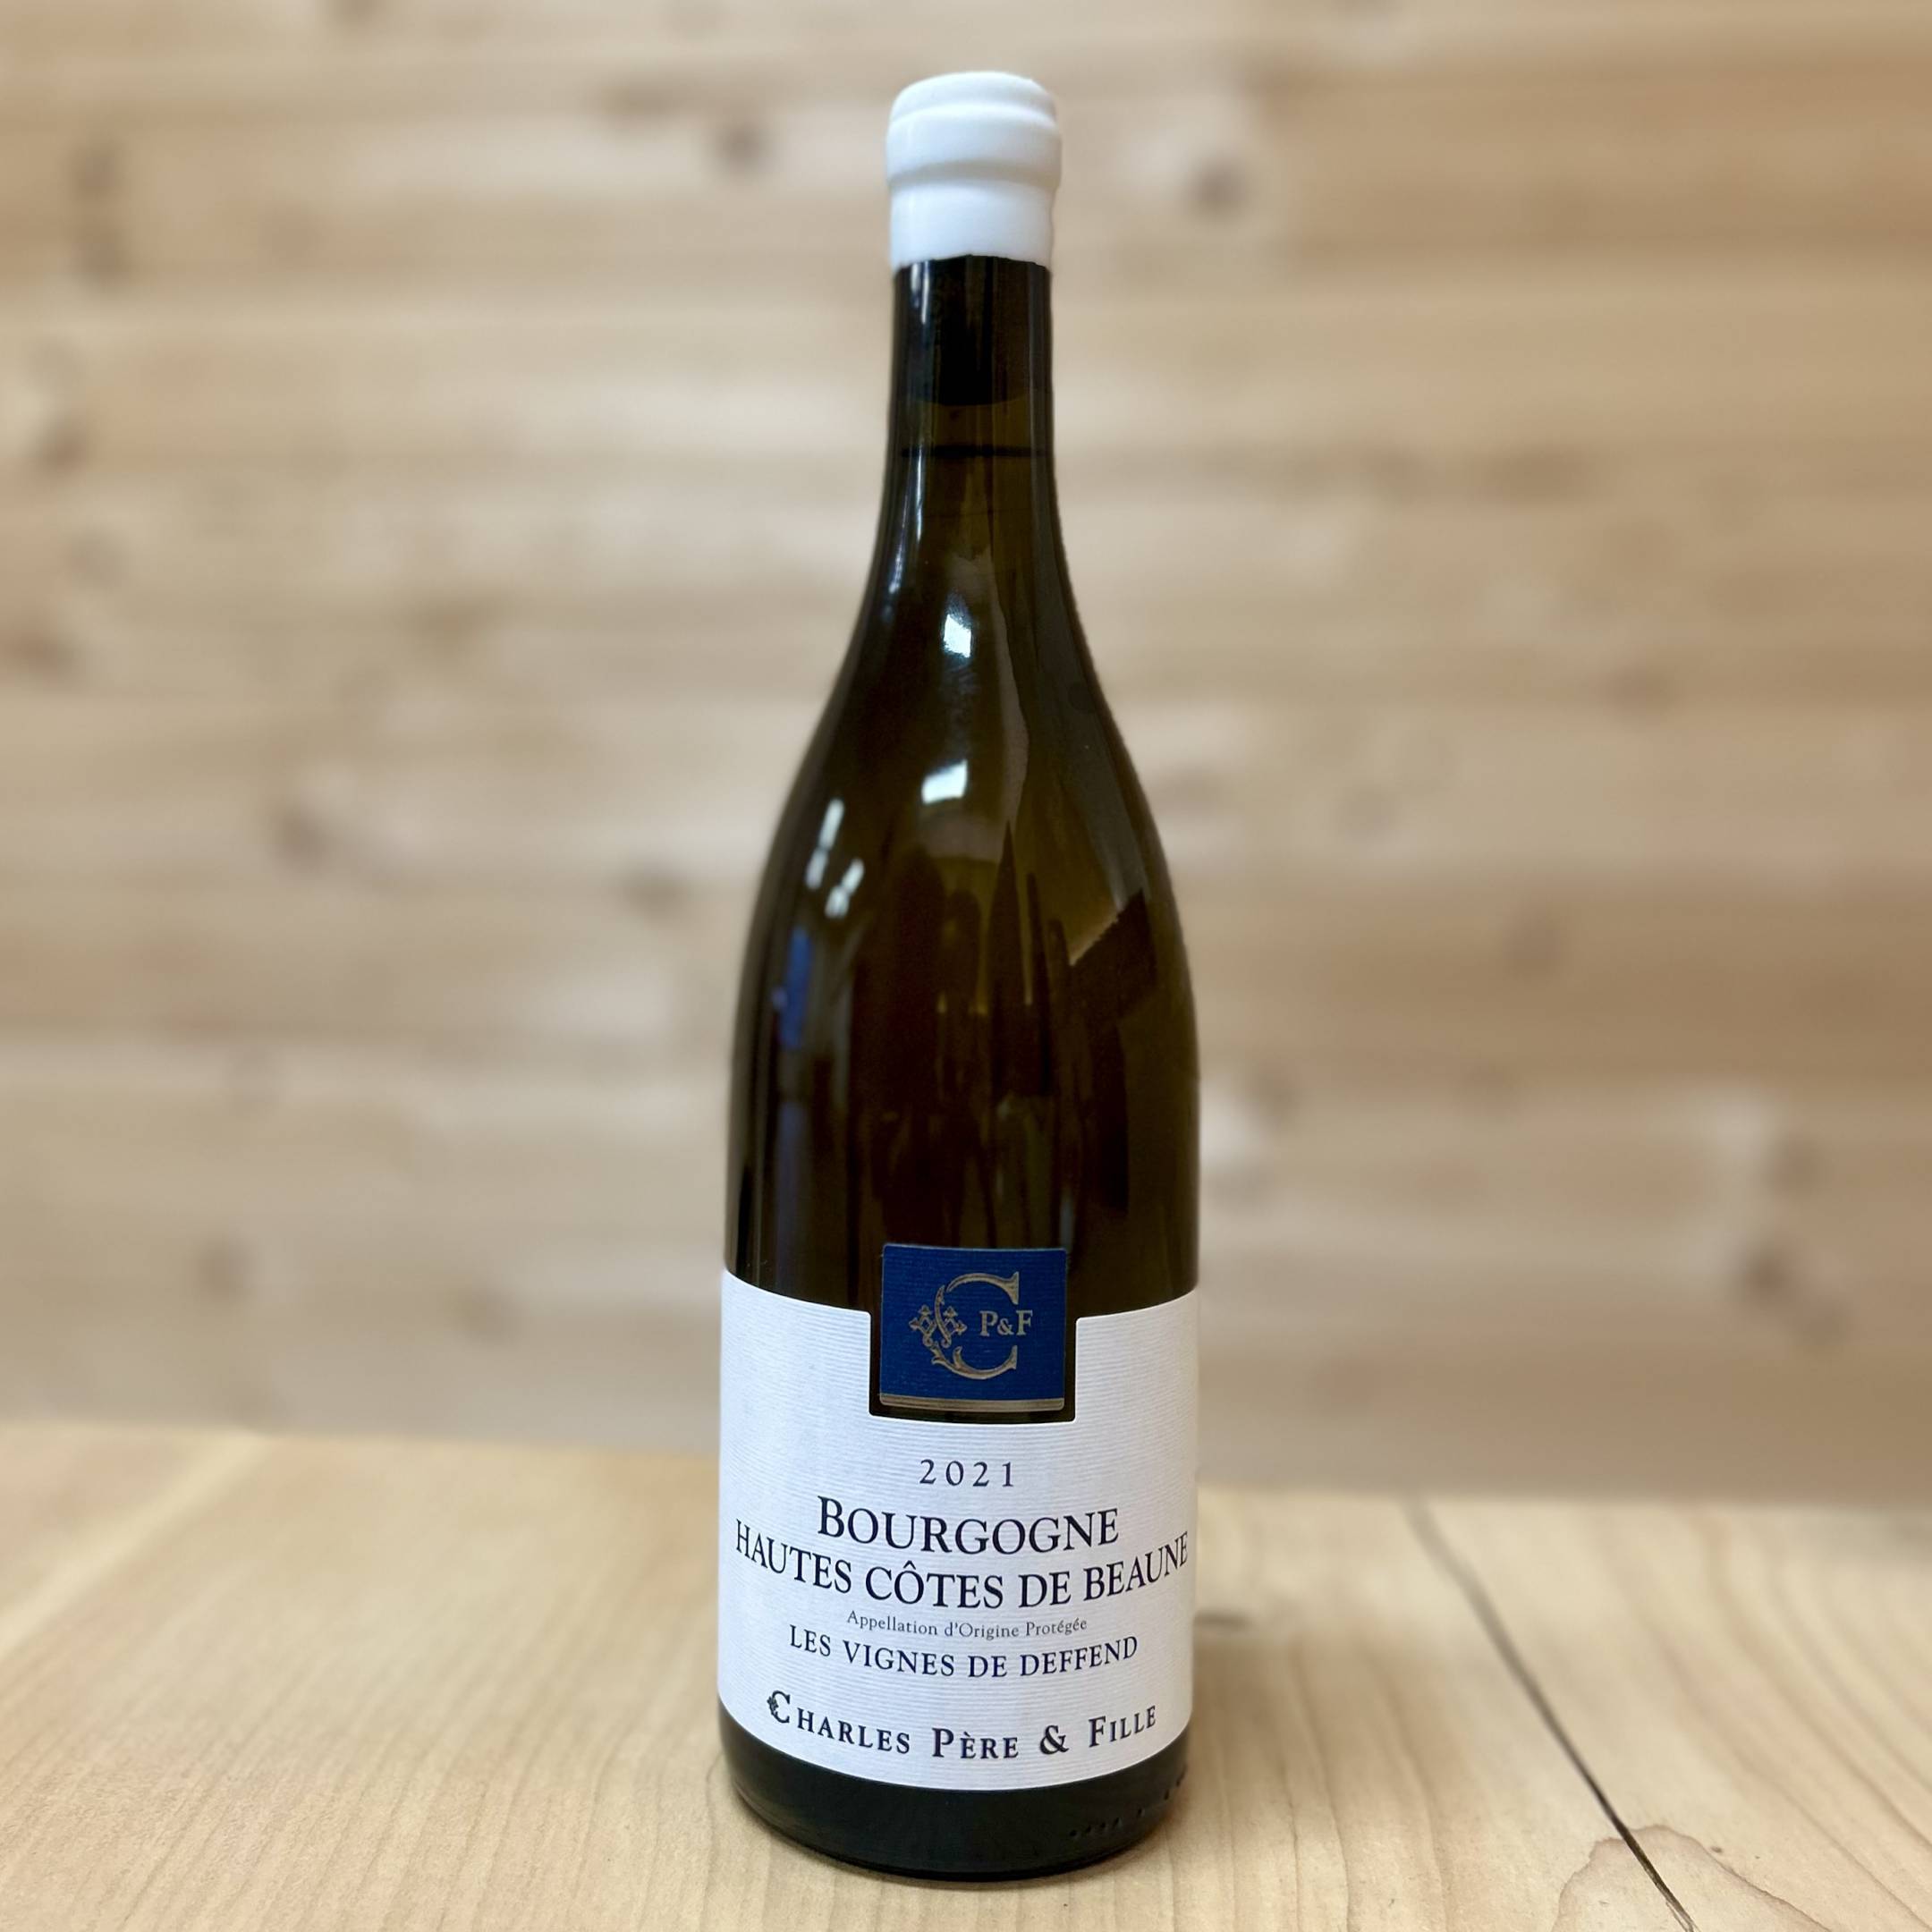 Charles Père & Fille Bourgogne Hautes Côtes de Beaune